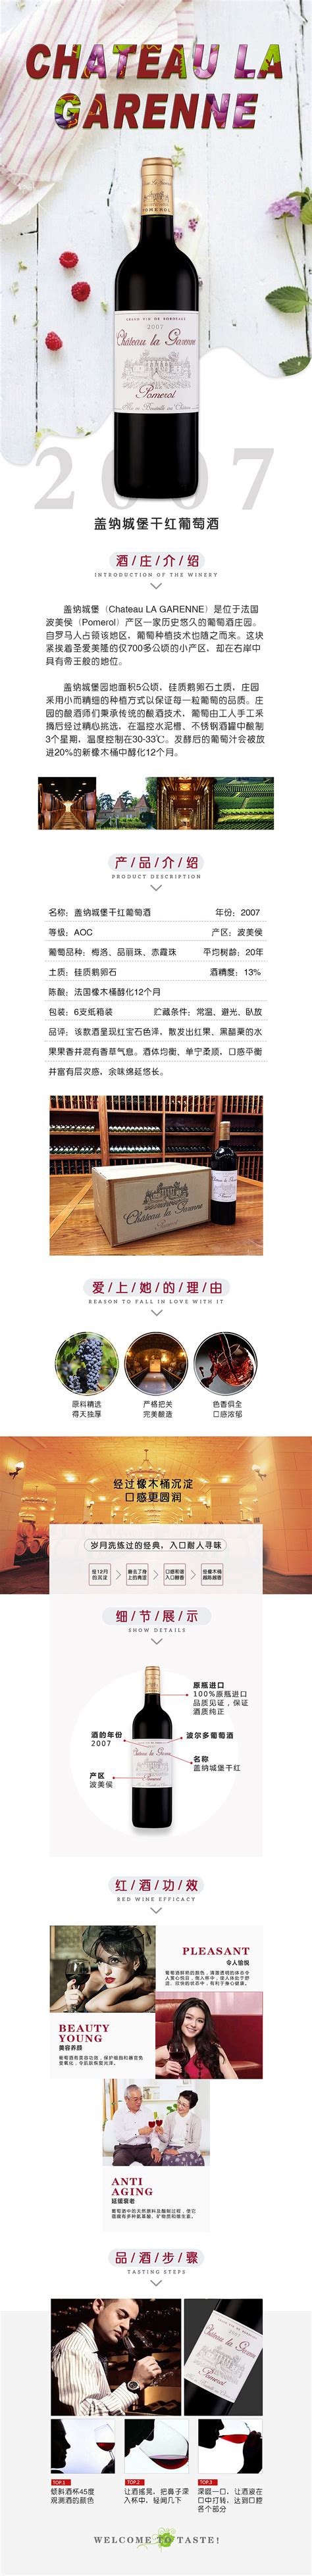 也买酒-也买（上海）商贸有限公司主页展示-海淘科技